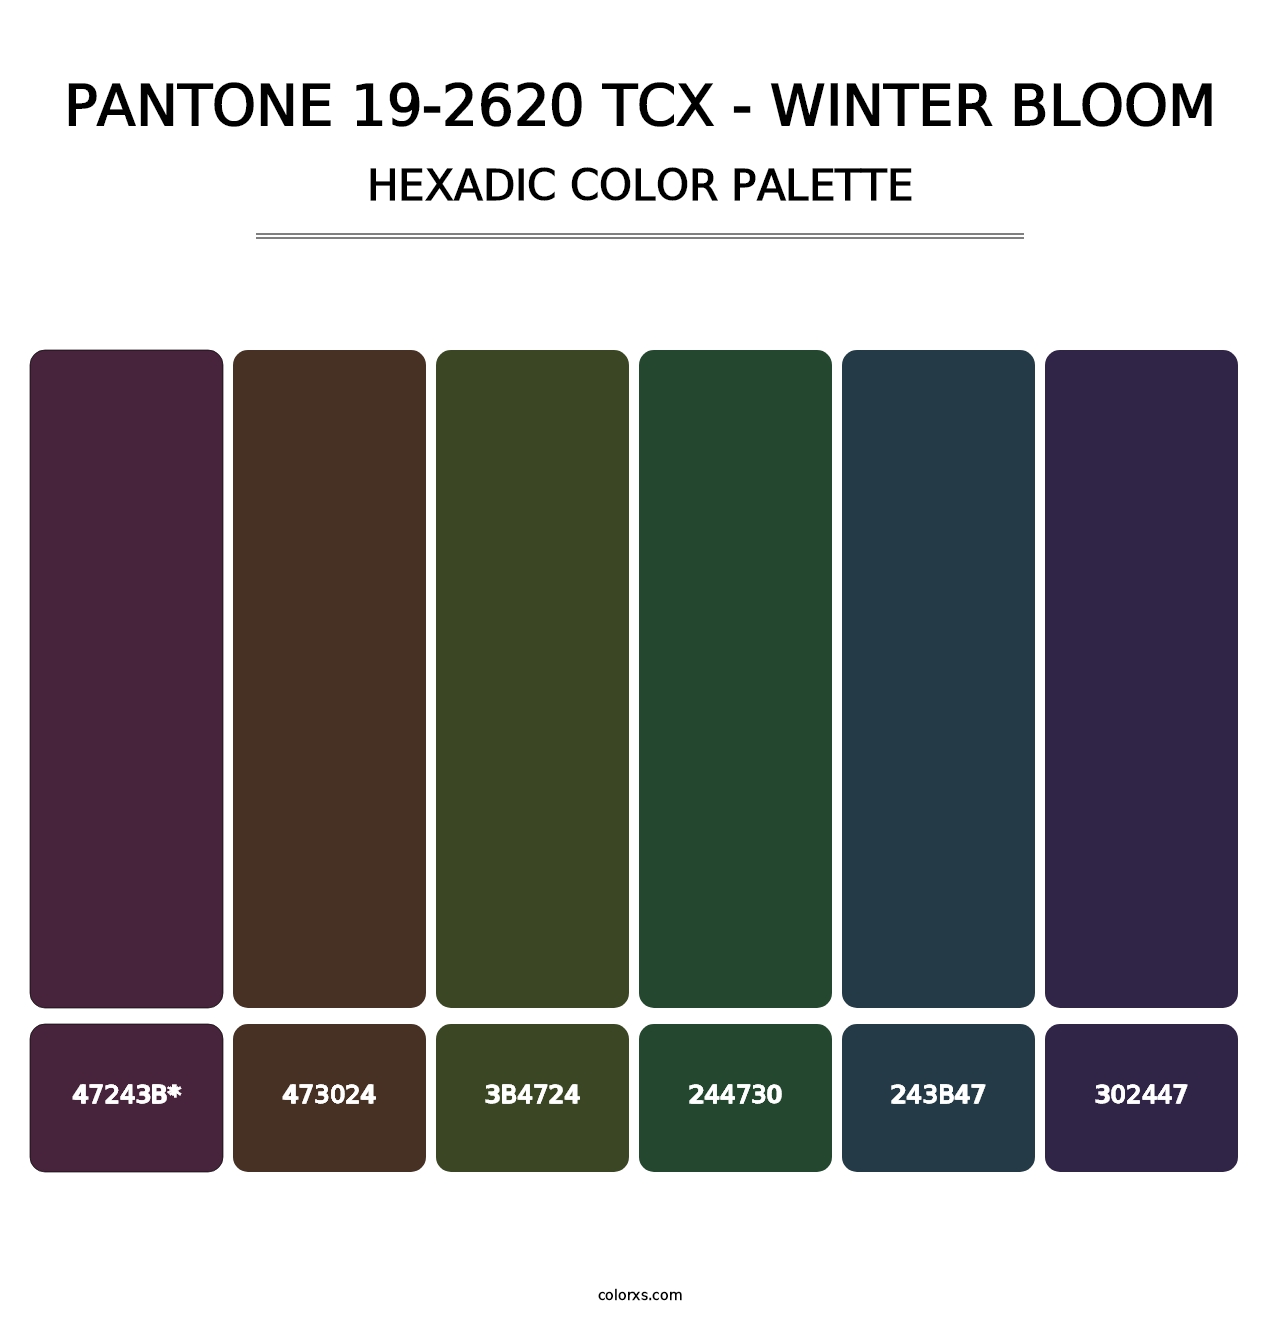 PANTONE 19-2620 TCX - Winter Bloom - Hexadic Color Palette